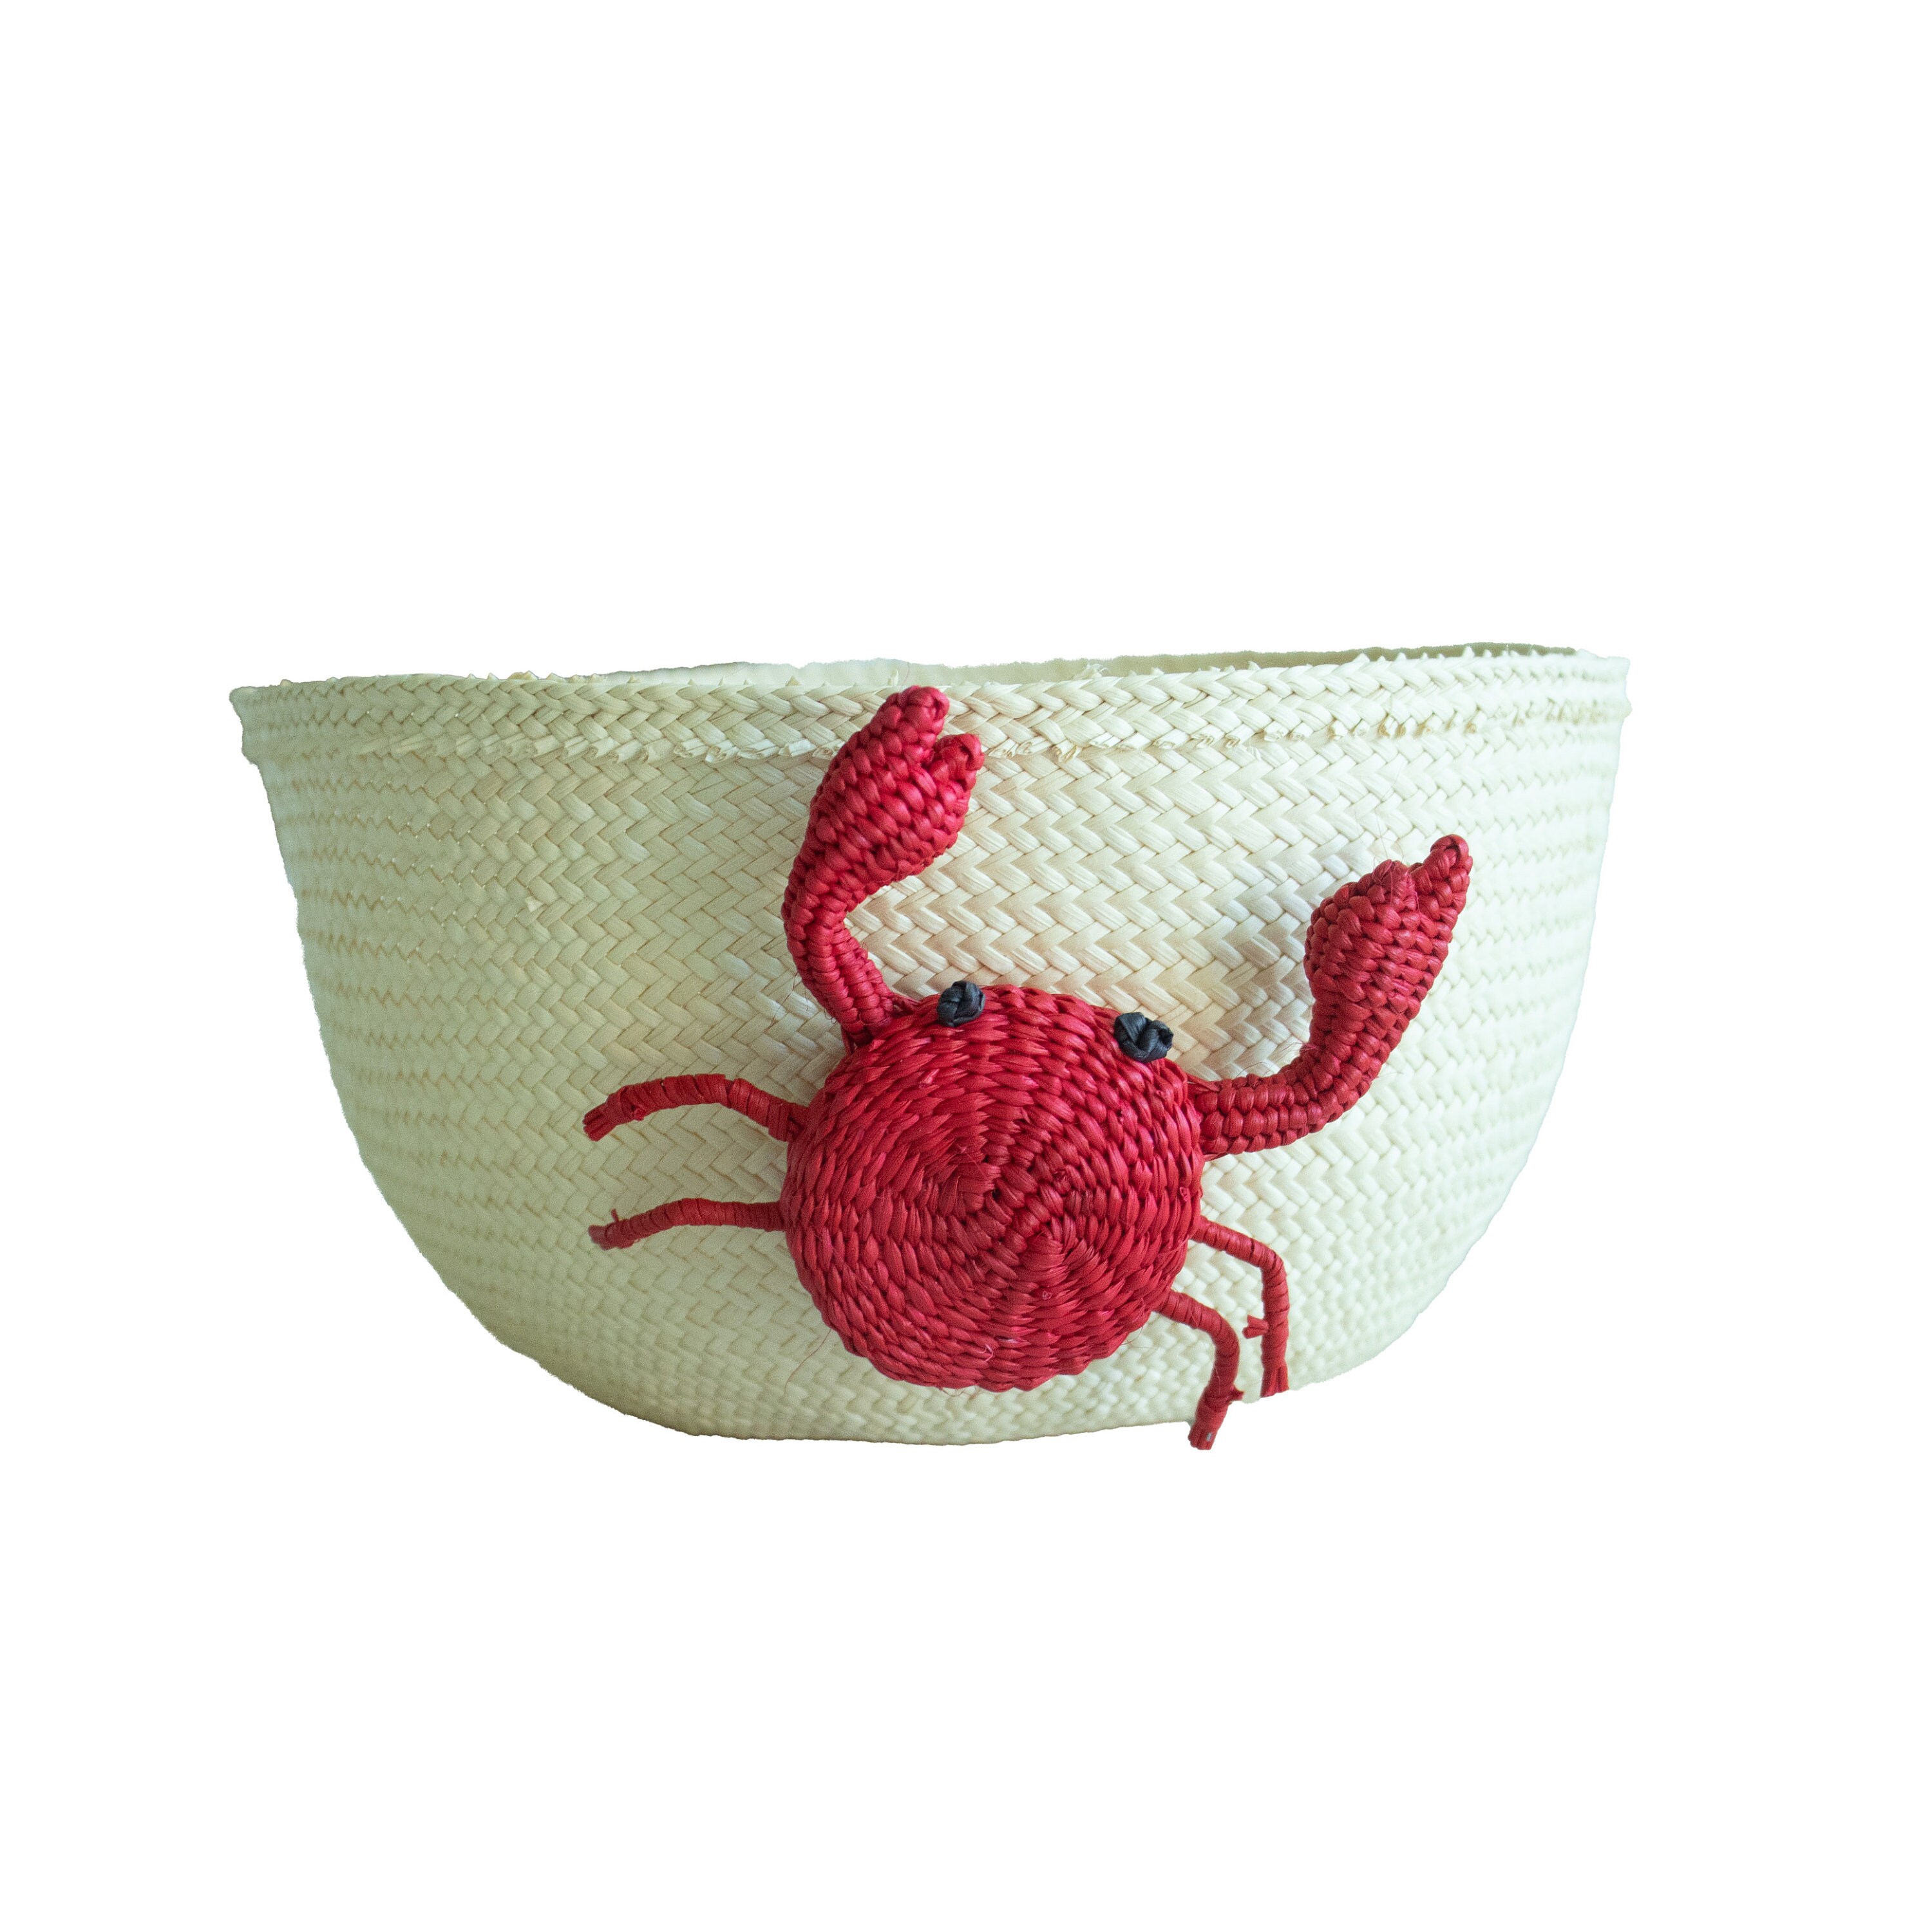 Crab Basket Straw Basket -  Canada